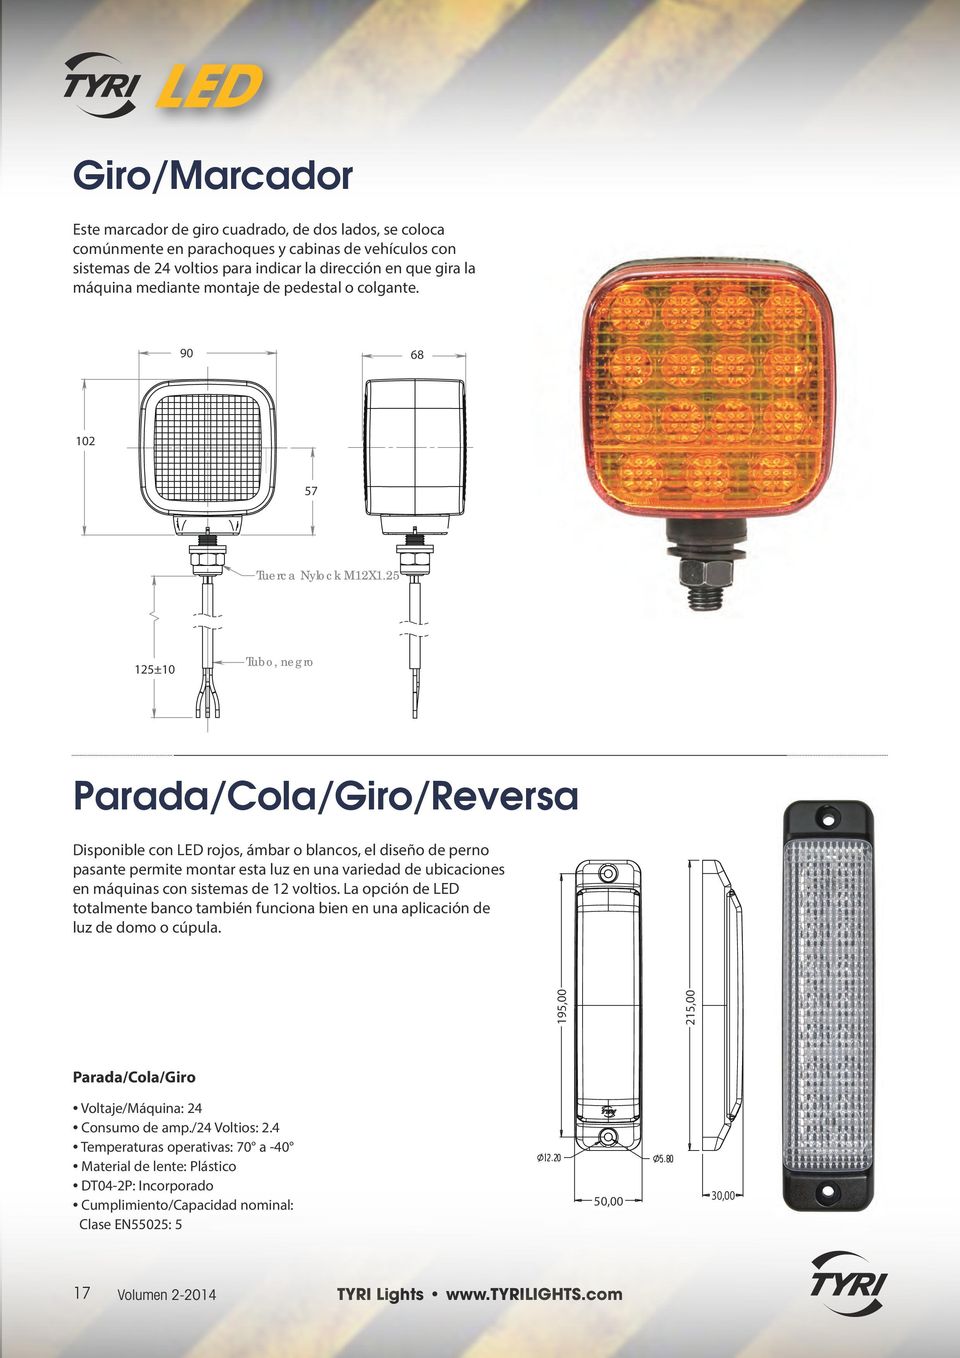 2 12±10 Tubo, negro Parada/Cola/Giro/Reversa Disponible con LED rojos, ámbar o blancos, el diseño de perno pasante permite montar esta luz en una variedad de ubicaciones en máquinas con sistemas de